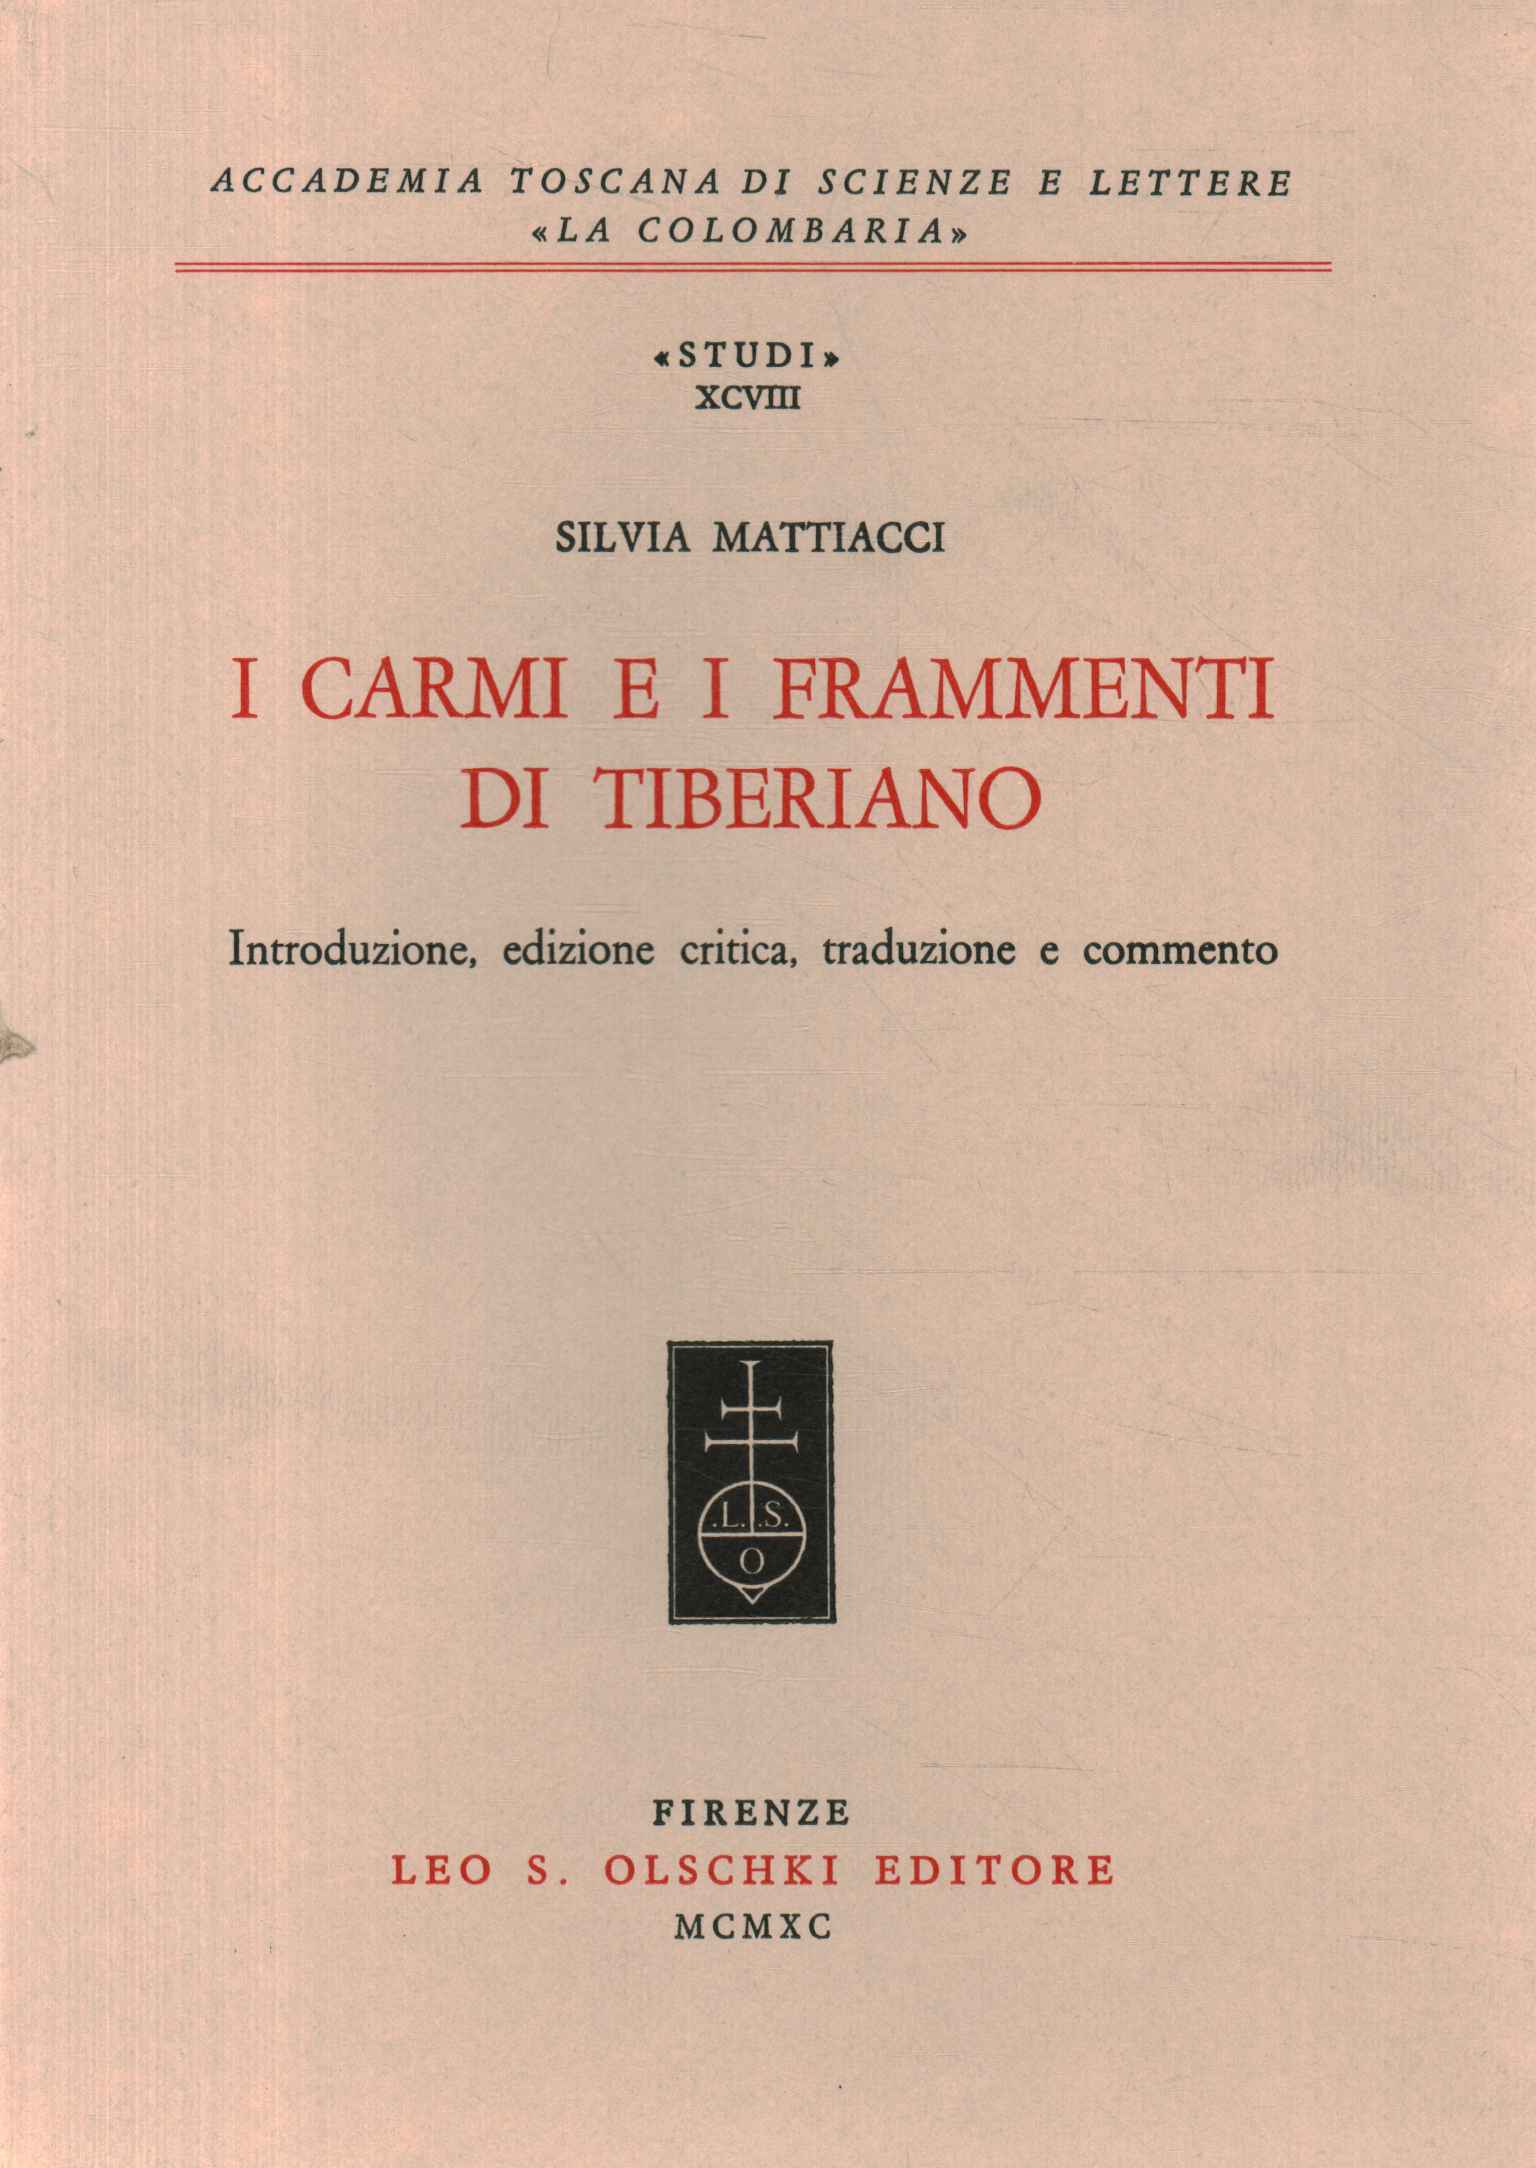 Die Gedichte und Fragmente von Tiberiano